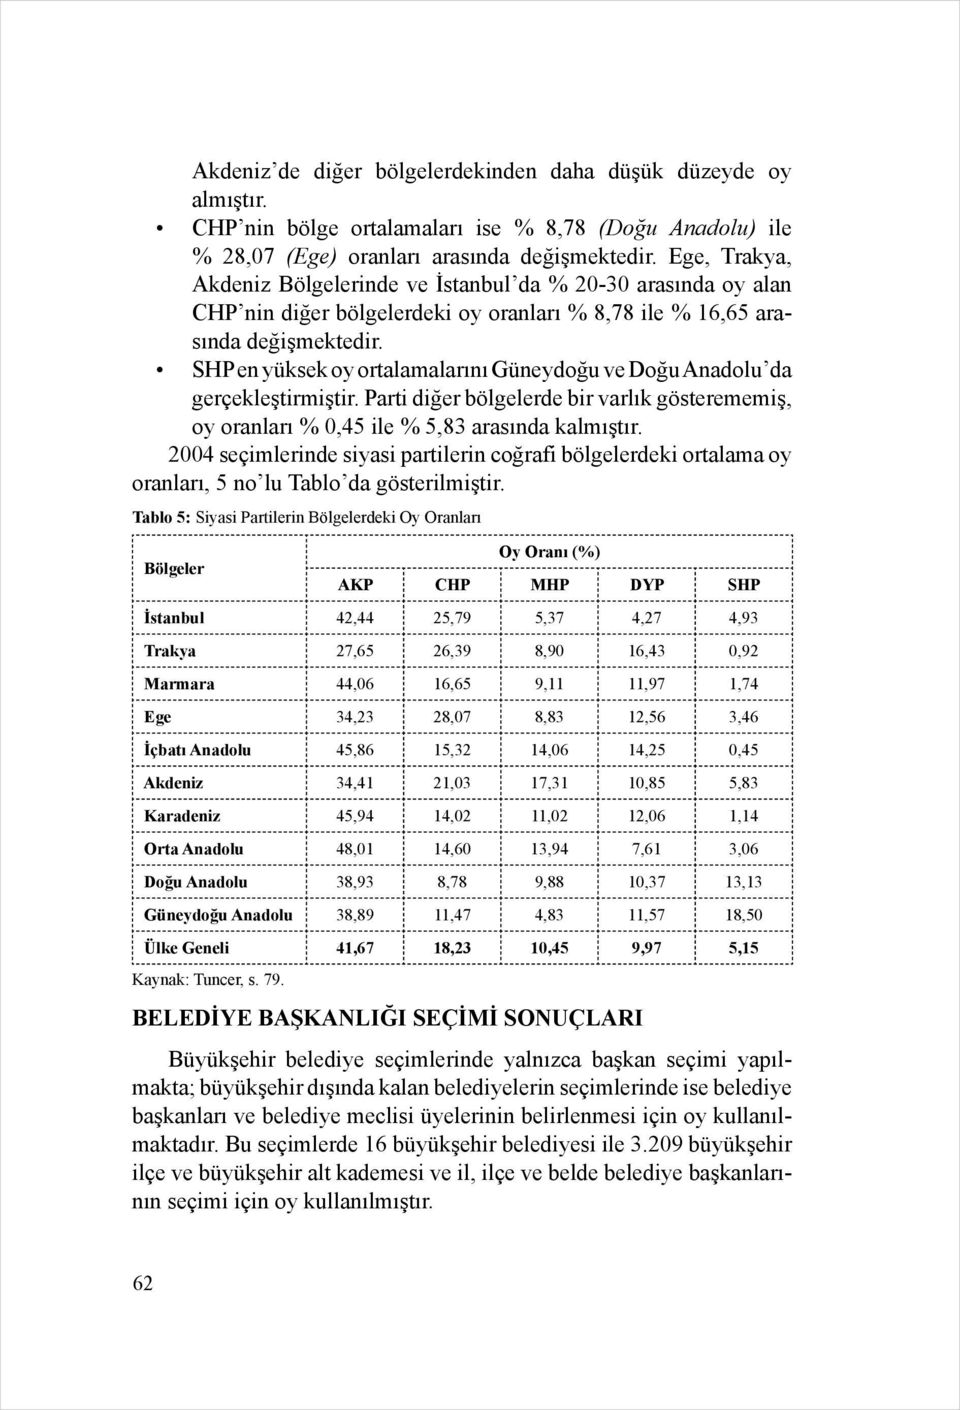 SHP en yüksek oy ortalamalarını Güneydoğu ve Doğu Anadolu da gerçekleştirmiştir. Parti diğer bölgelerde bir varlık gösterememiş, oy oranları % 0,45 ile % 5,83 arasında kalmıştır.